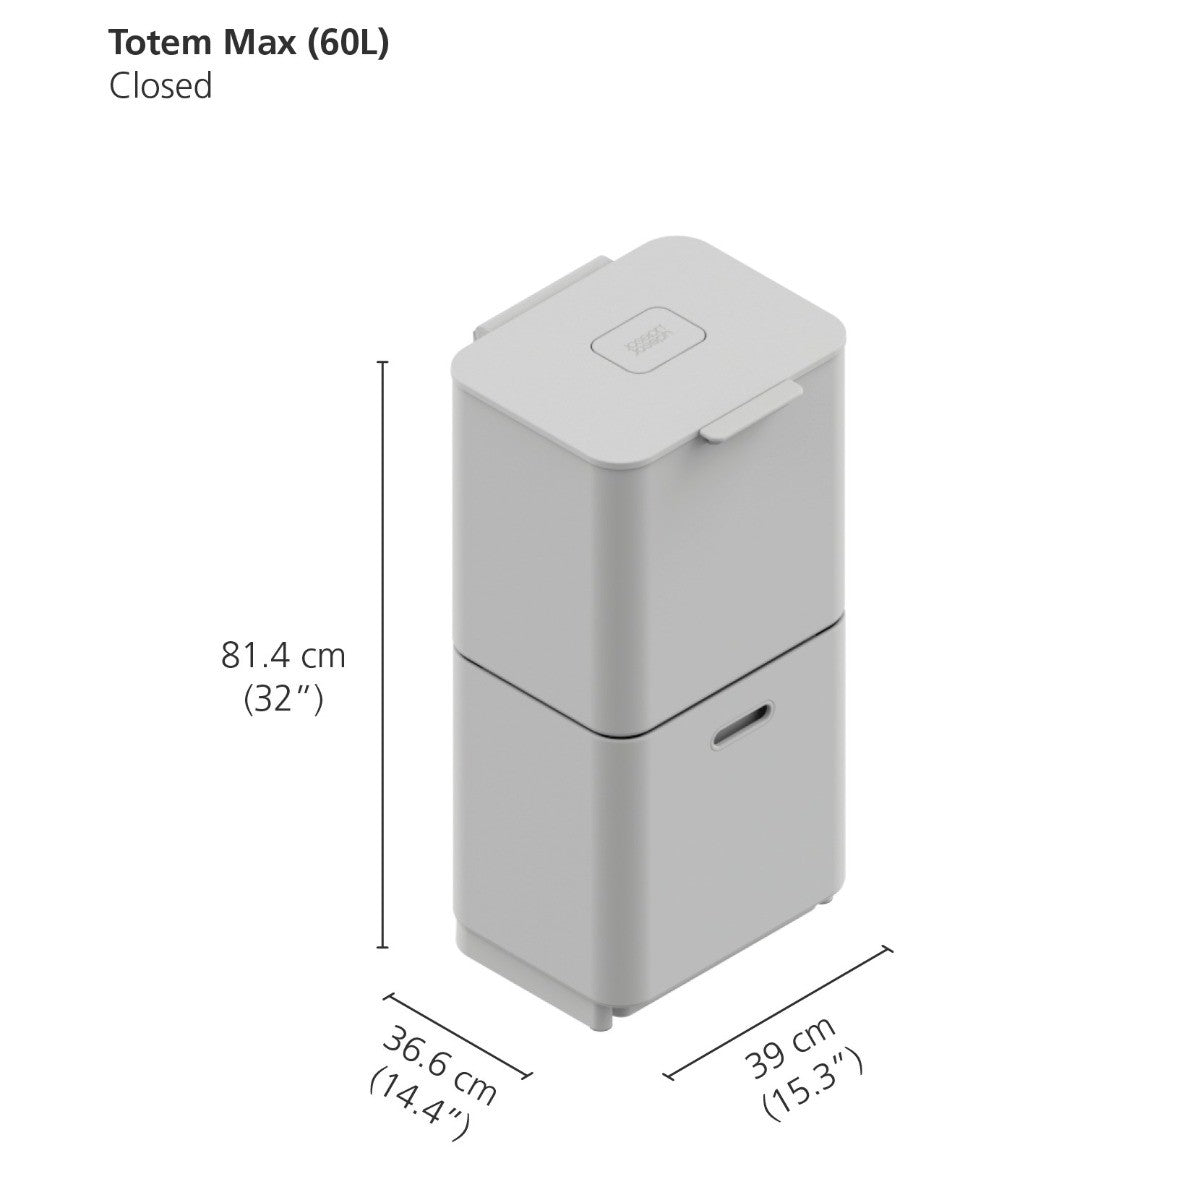 Joseph Joseph 3-Compartment Totem Max 60 Litre Kitchen Recycling Bin in graphite 30062 dimensions when closed